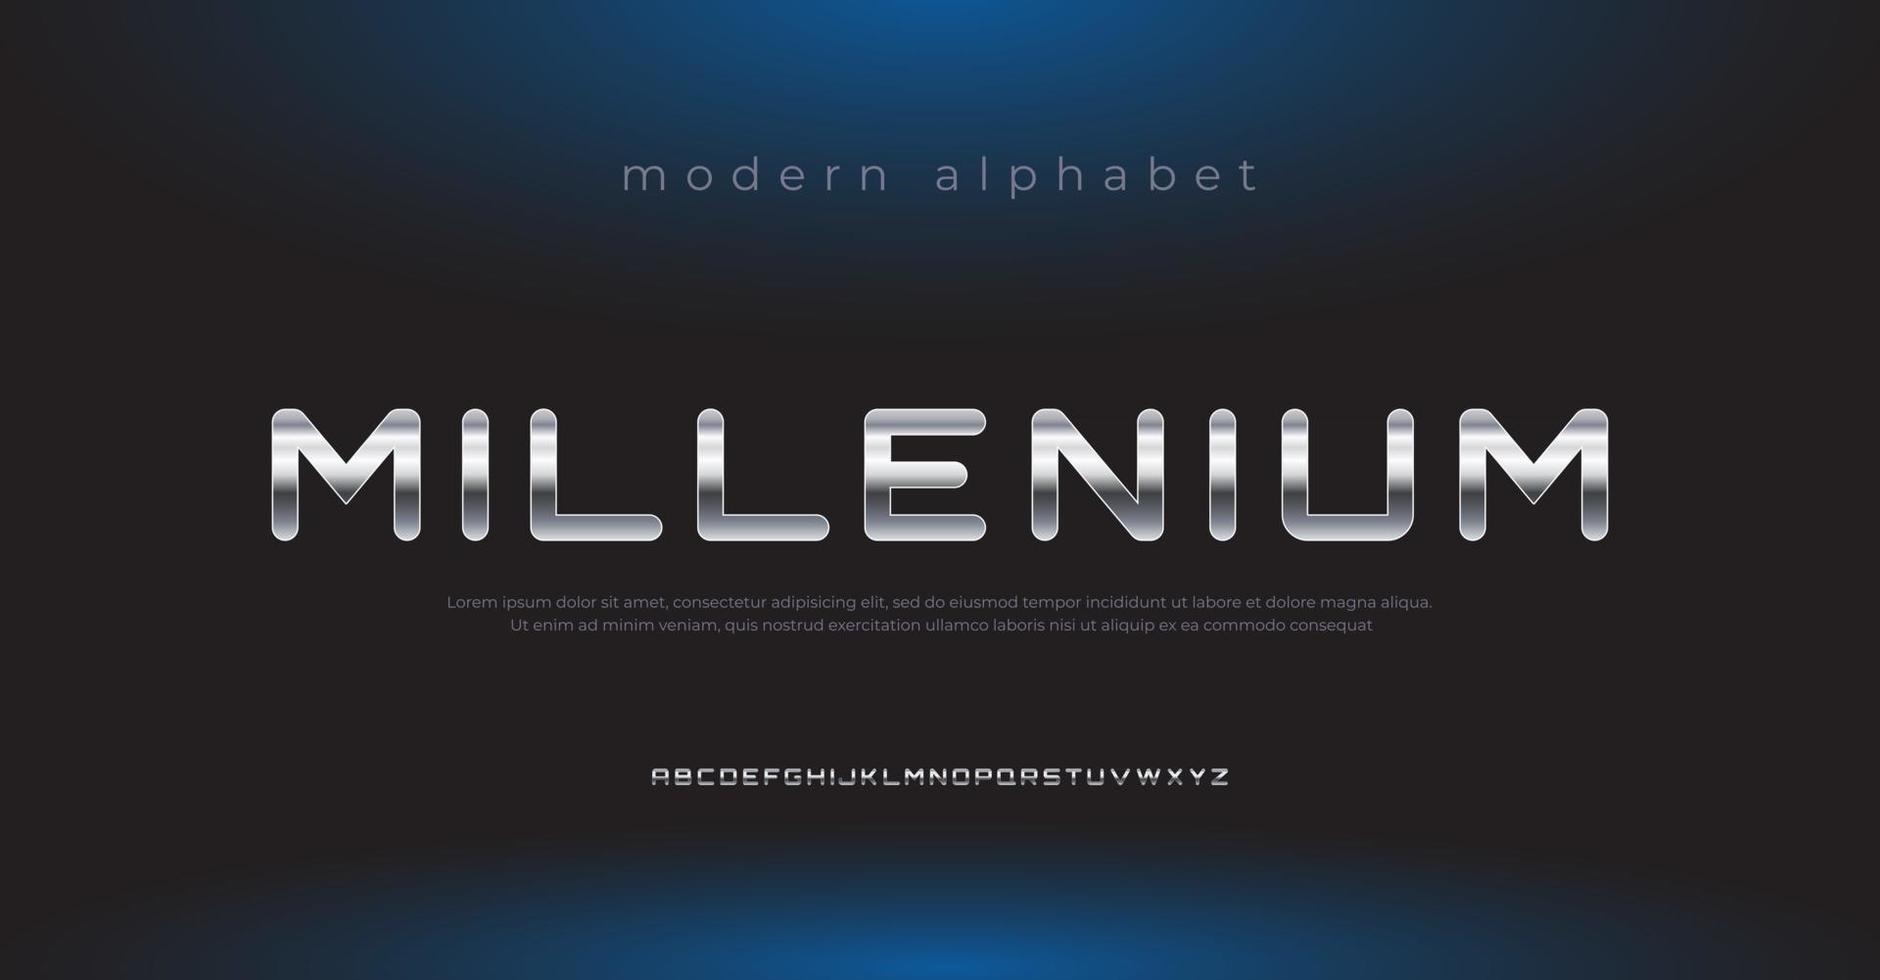 toekomstige moderne metalen alfabet lettertype. typografie lettertypen in stedelijke stijl voor sport, technologie, digitaal, filmlogo-ontwerp vector